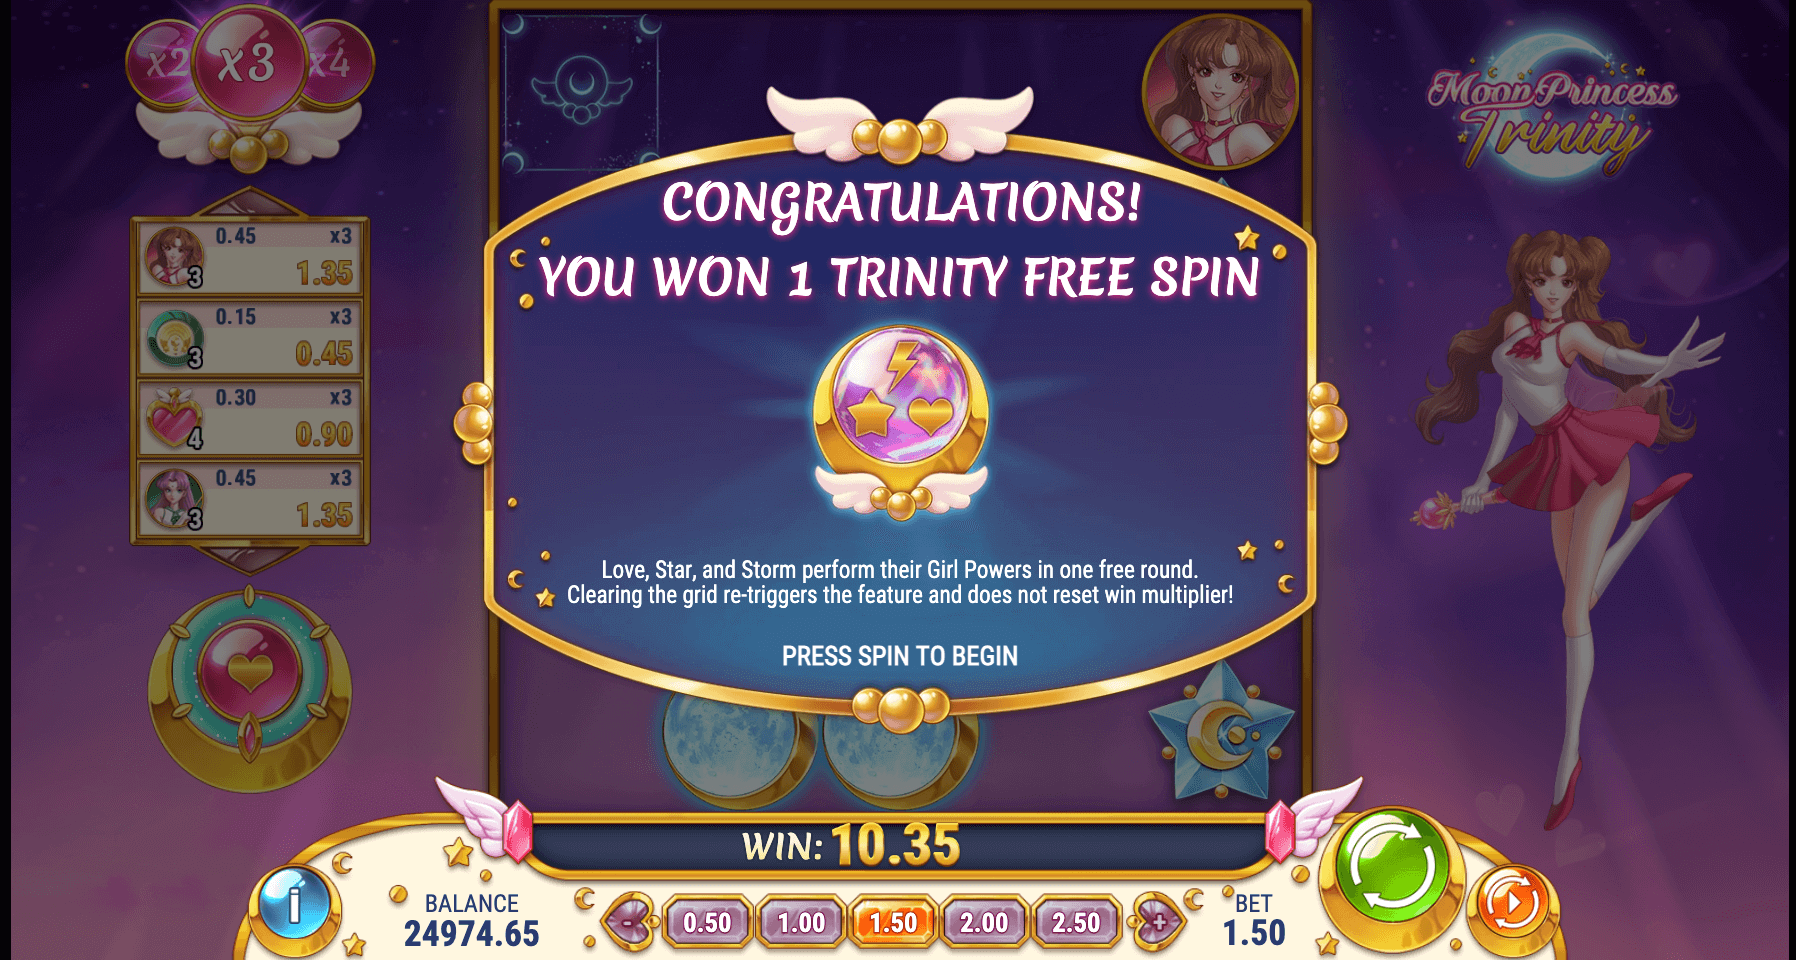 Moon Princess Trinity free game round